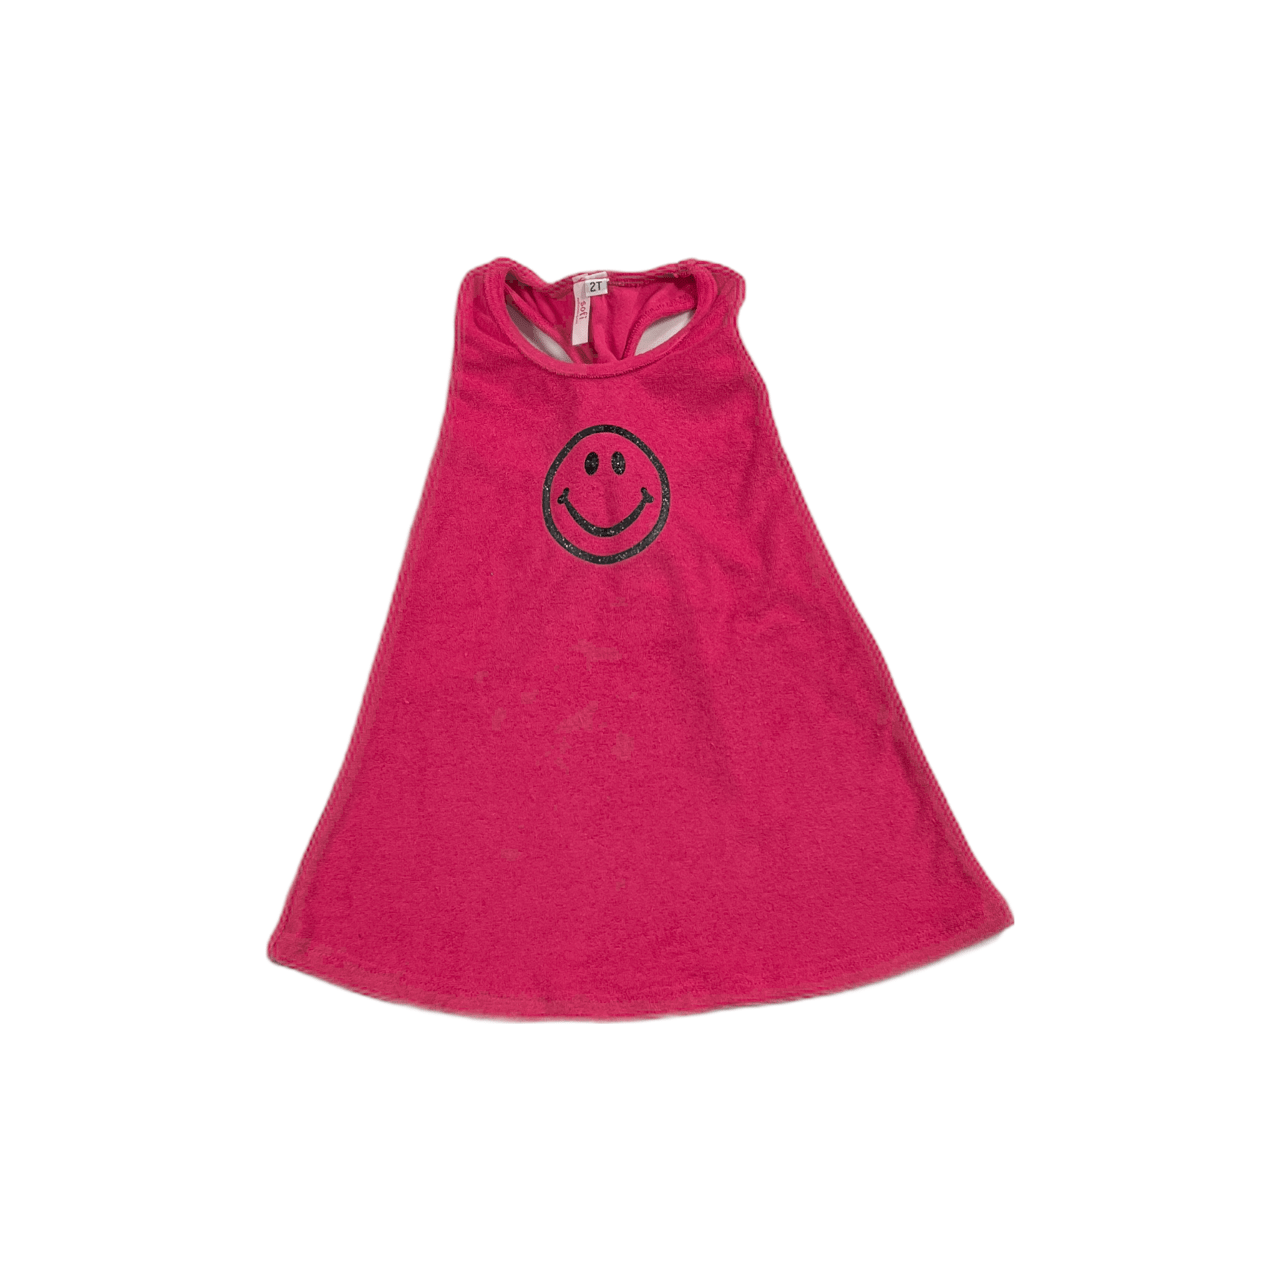 Hot Pink Terry Racerback Emoji Tank Dress - Twinkle Twinkle Little One